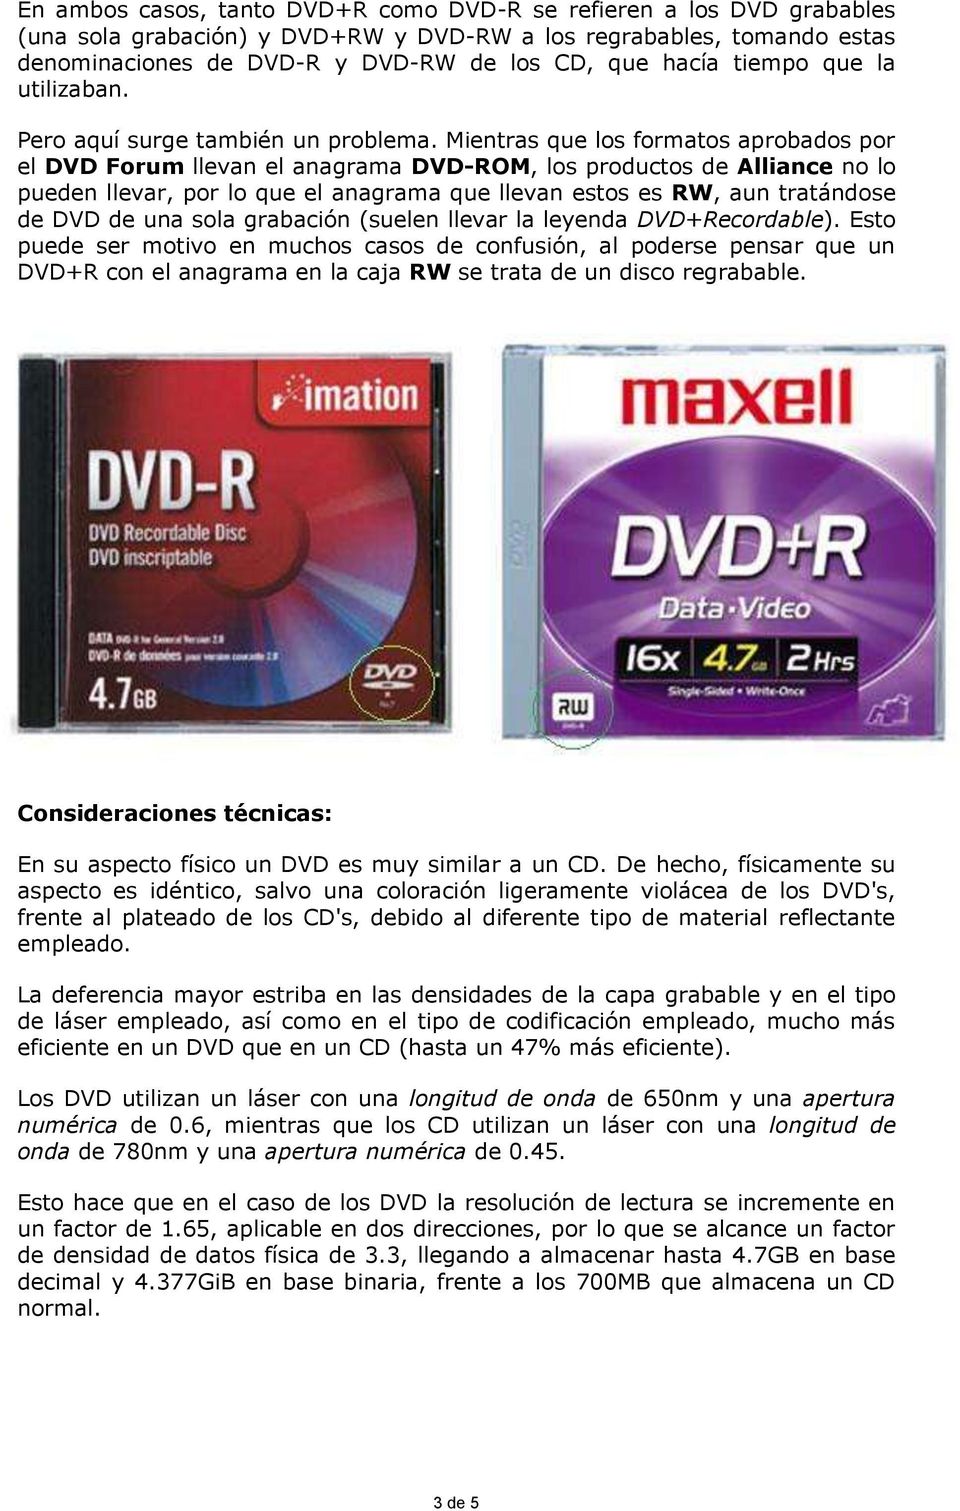 Mientras que los formatos aprobados por el DVD Forum llevan el anagrama DVD-ROM, los productos de Alliance no lo pueden llevar, por lo que el anagrama que llevan estos es RW, aun tratándose de DVD de